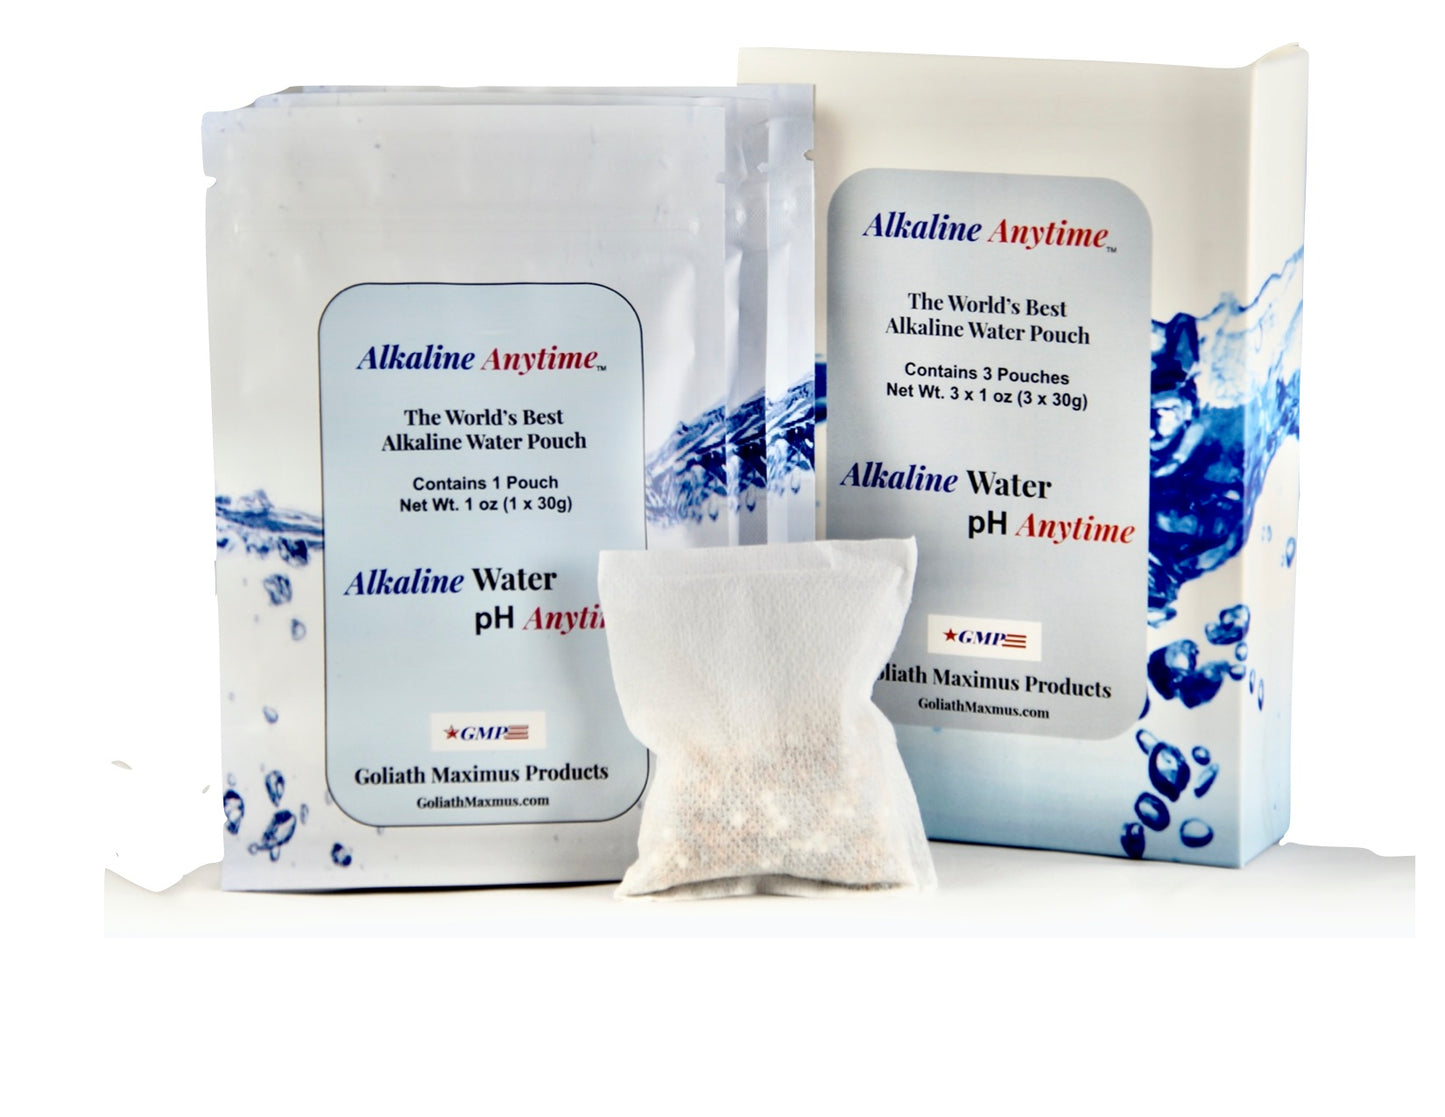 Alkaline Anytime The Best 3 Alkaline Water Filter Pouches - Alkaline Anytime